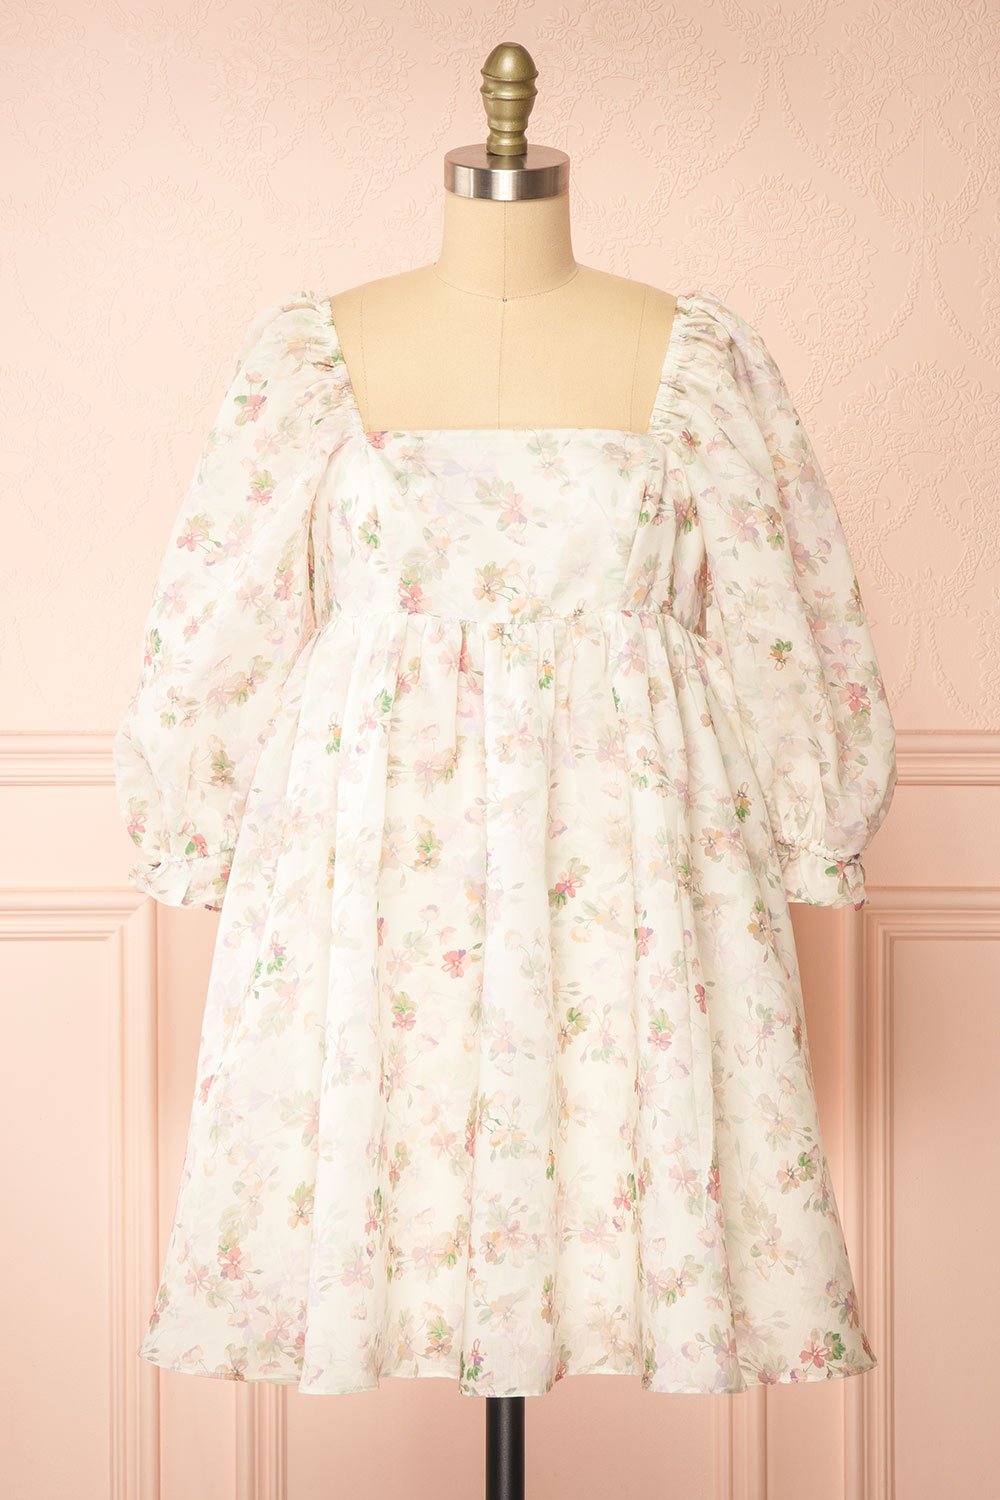 Fizelle Short Floral Babydoll Dress | Boutique 1861 front view